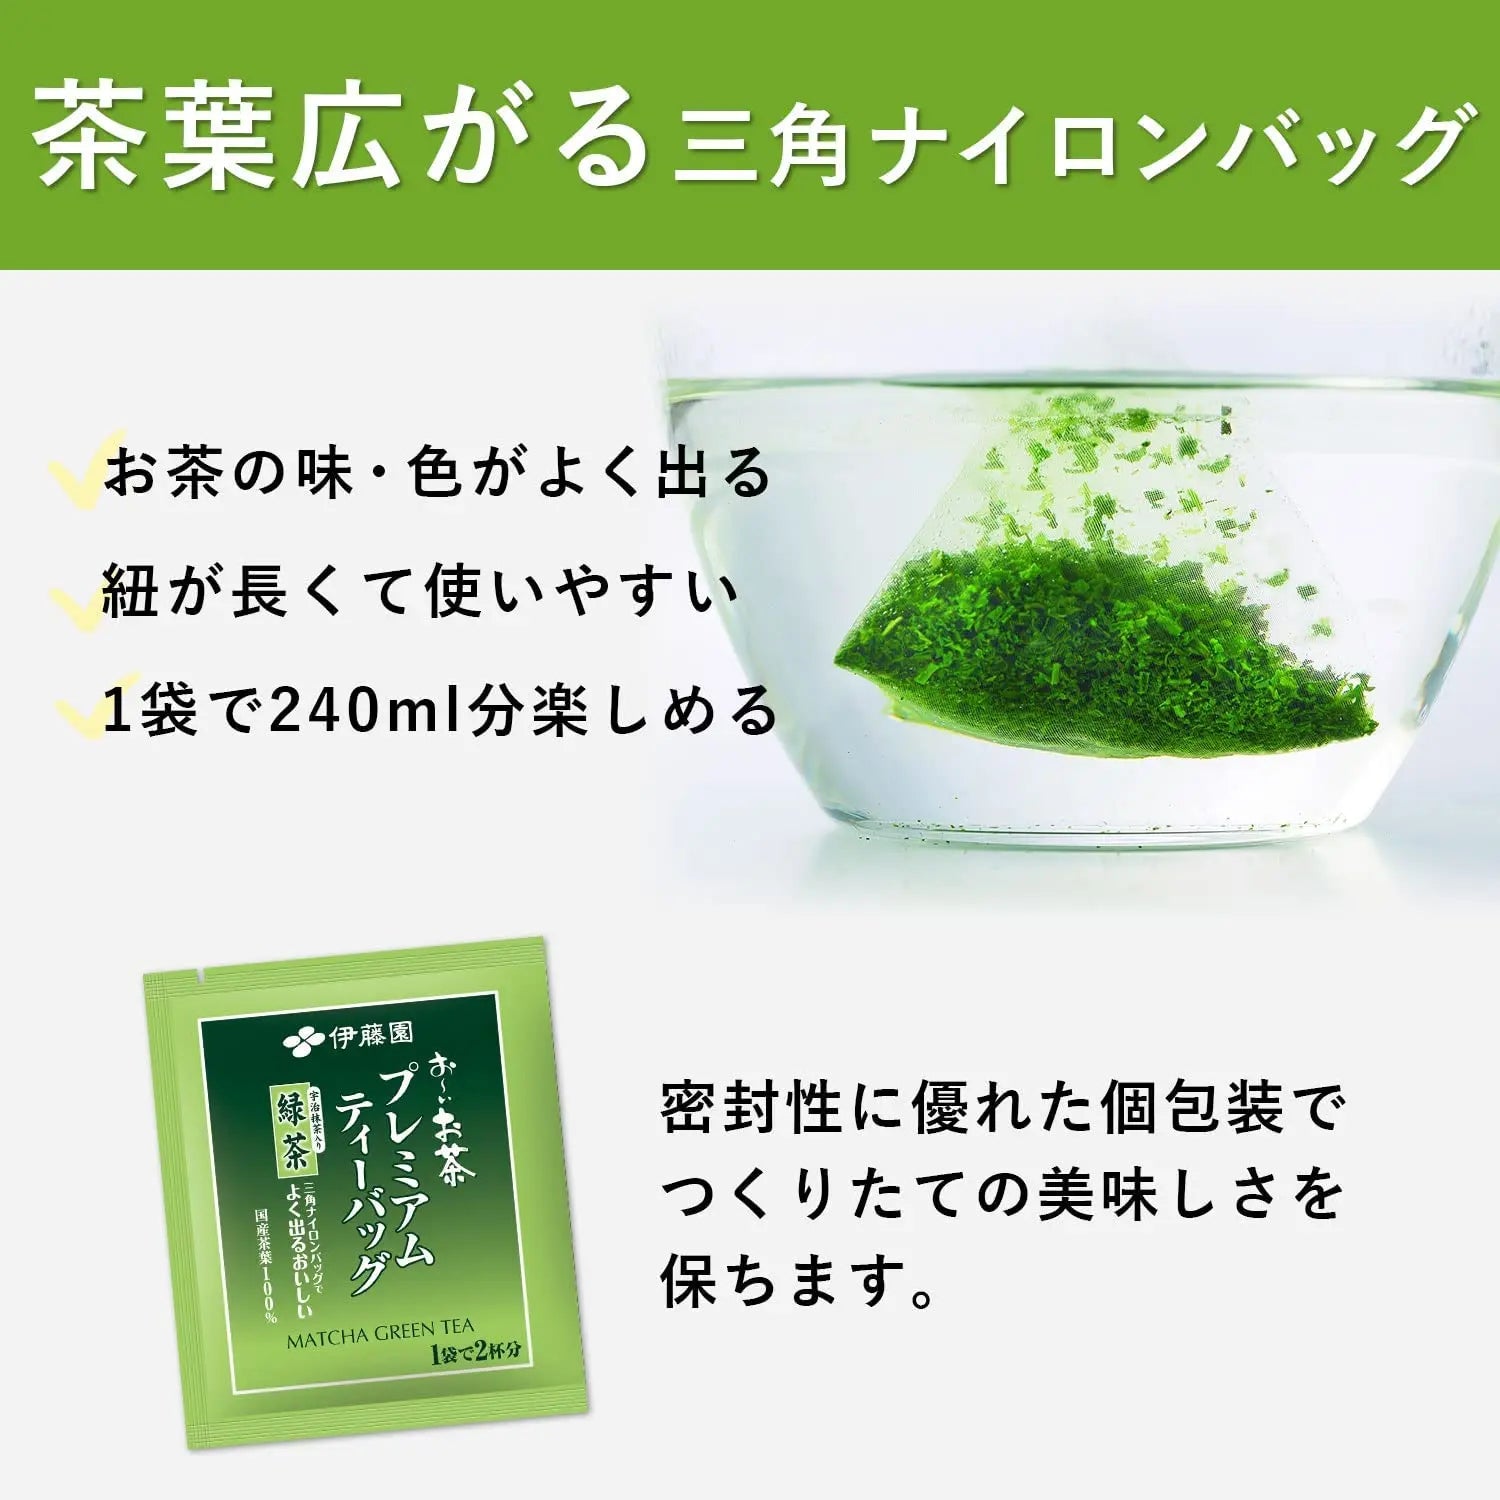 Itoen Green Tea Premium Bags - Buy Me Japan